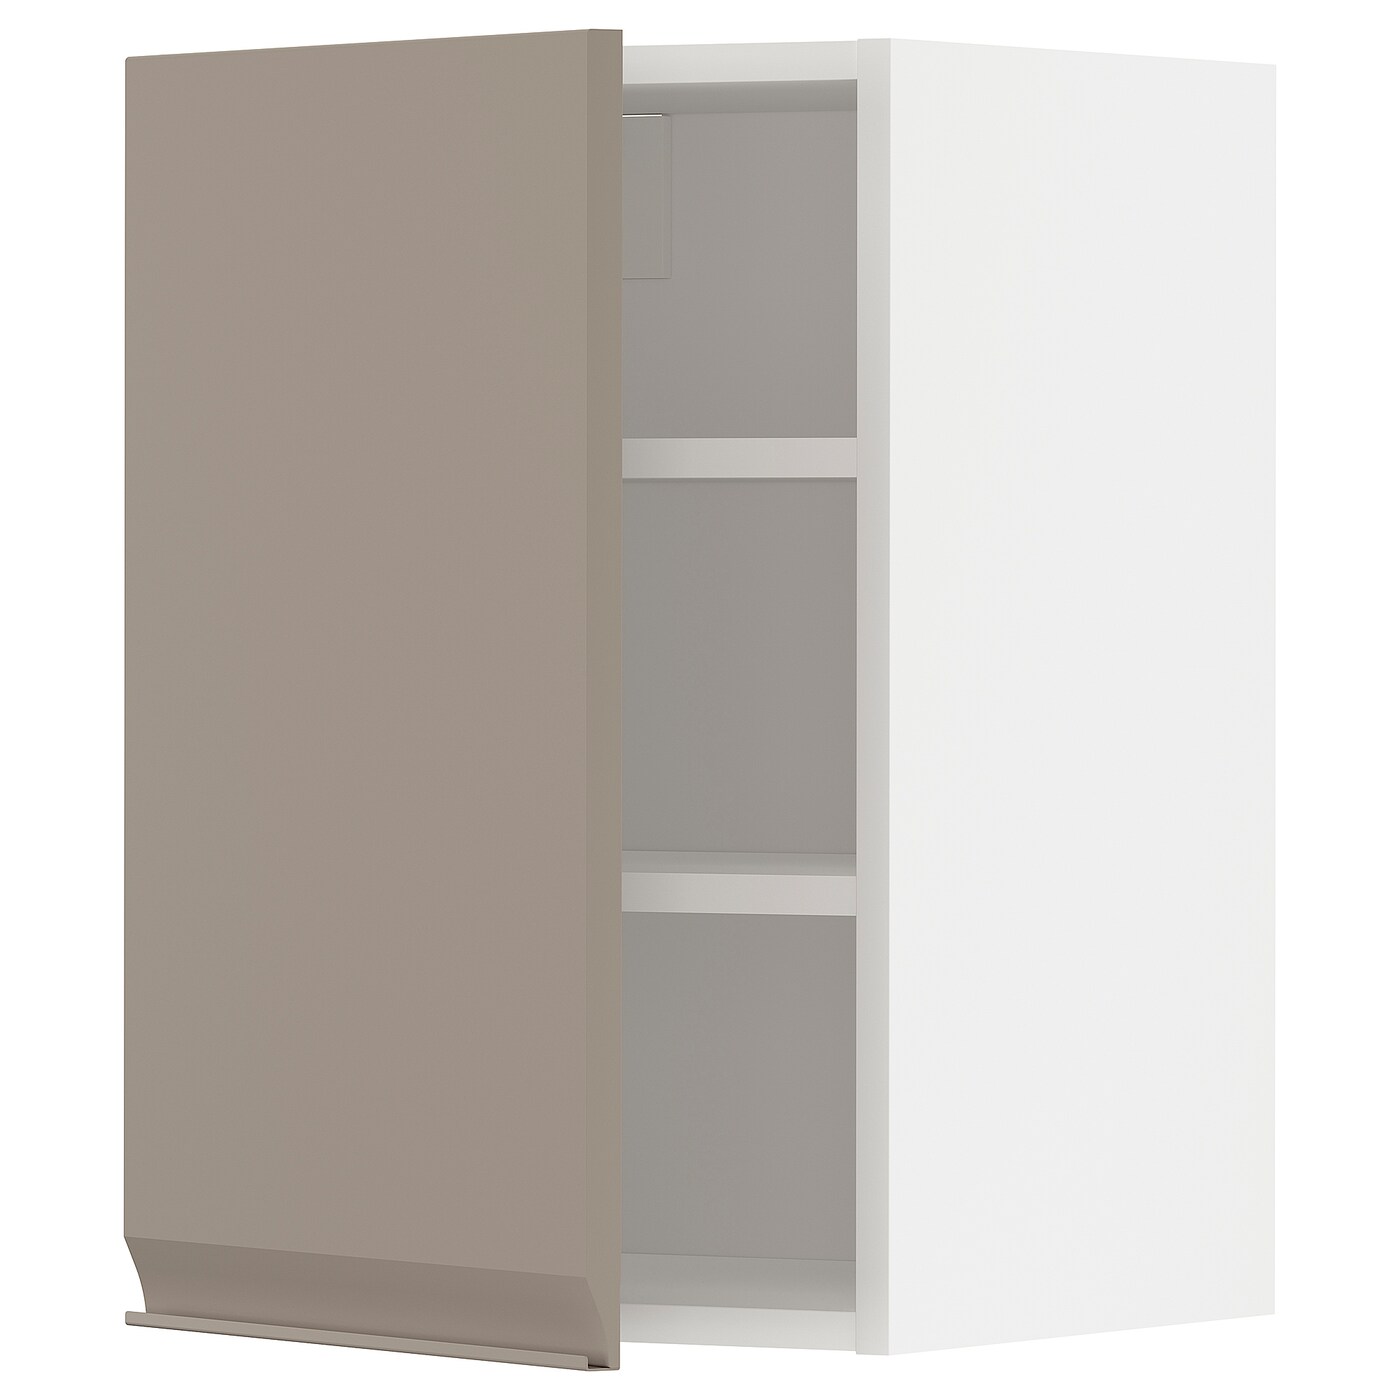 Навесной шкаф с полкой - METOD IKEA/ МЕТОД ИКЕА, 60х40 см, белый/светло-коричневый